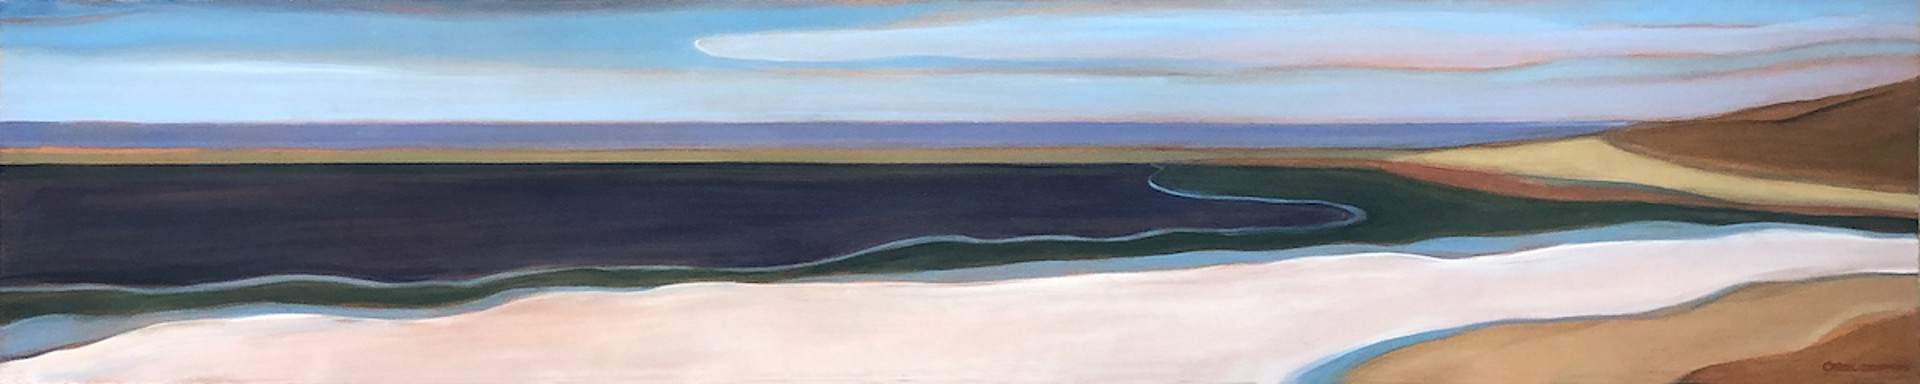 Big Sur III by Carol Chapman